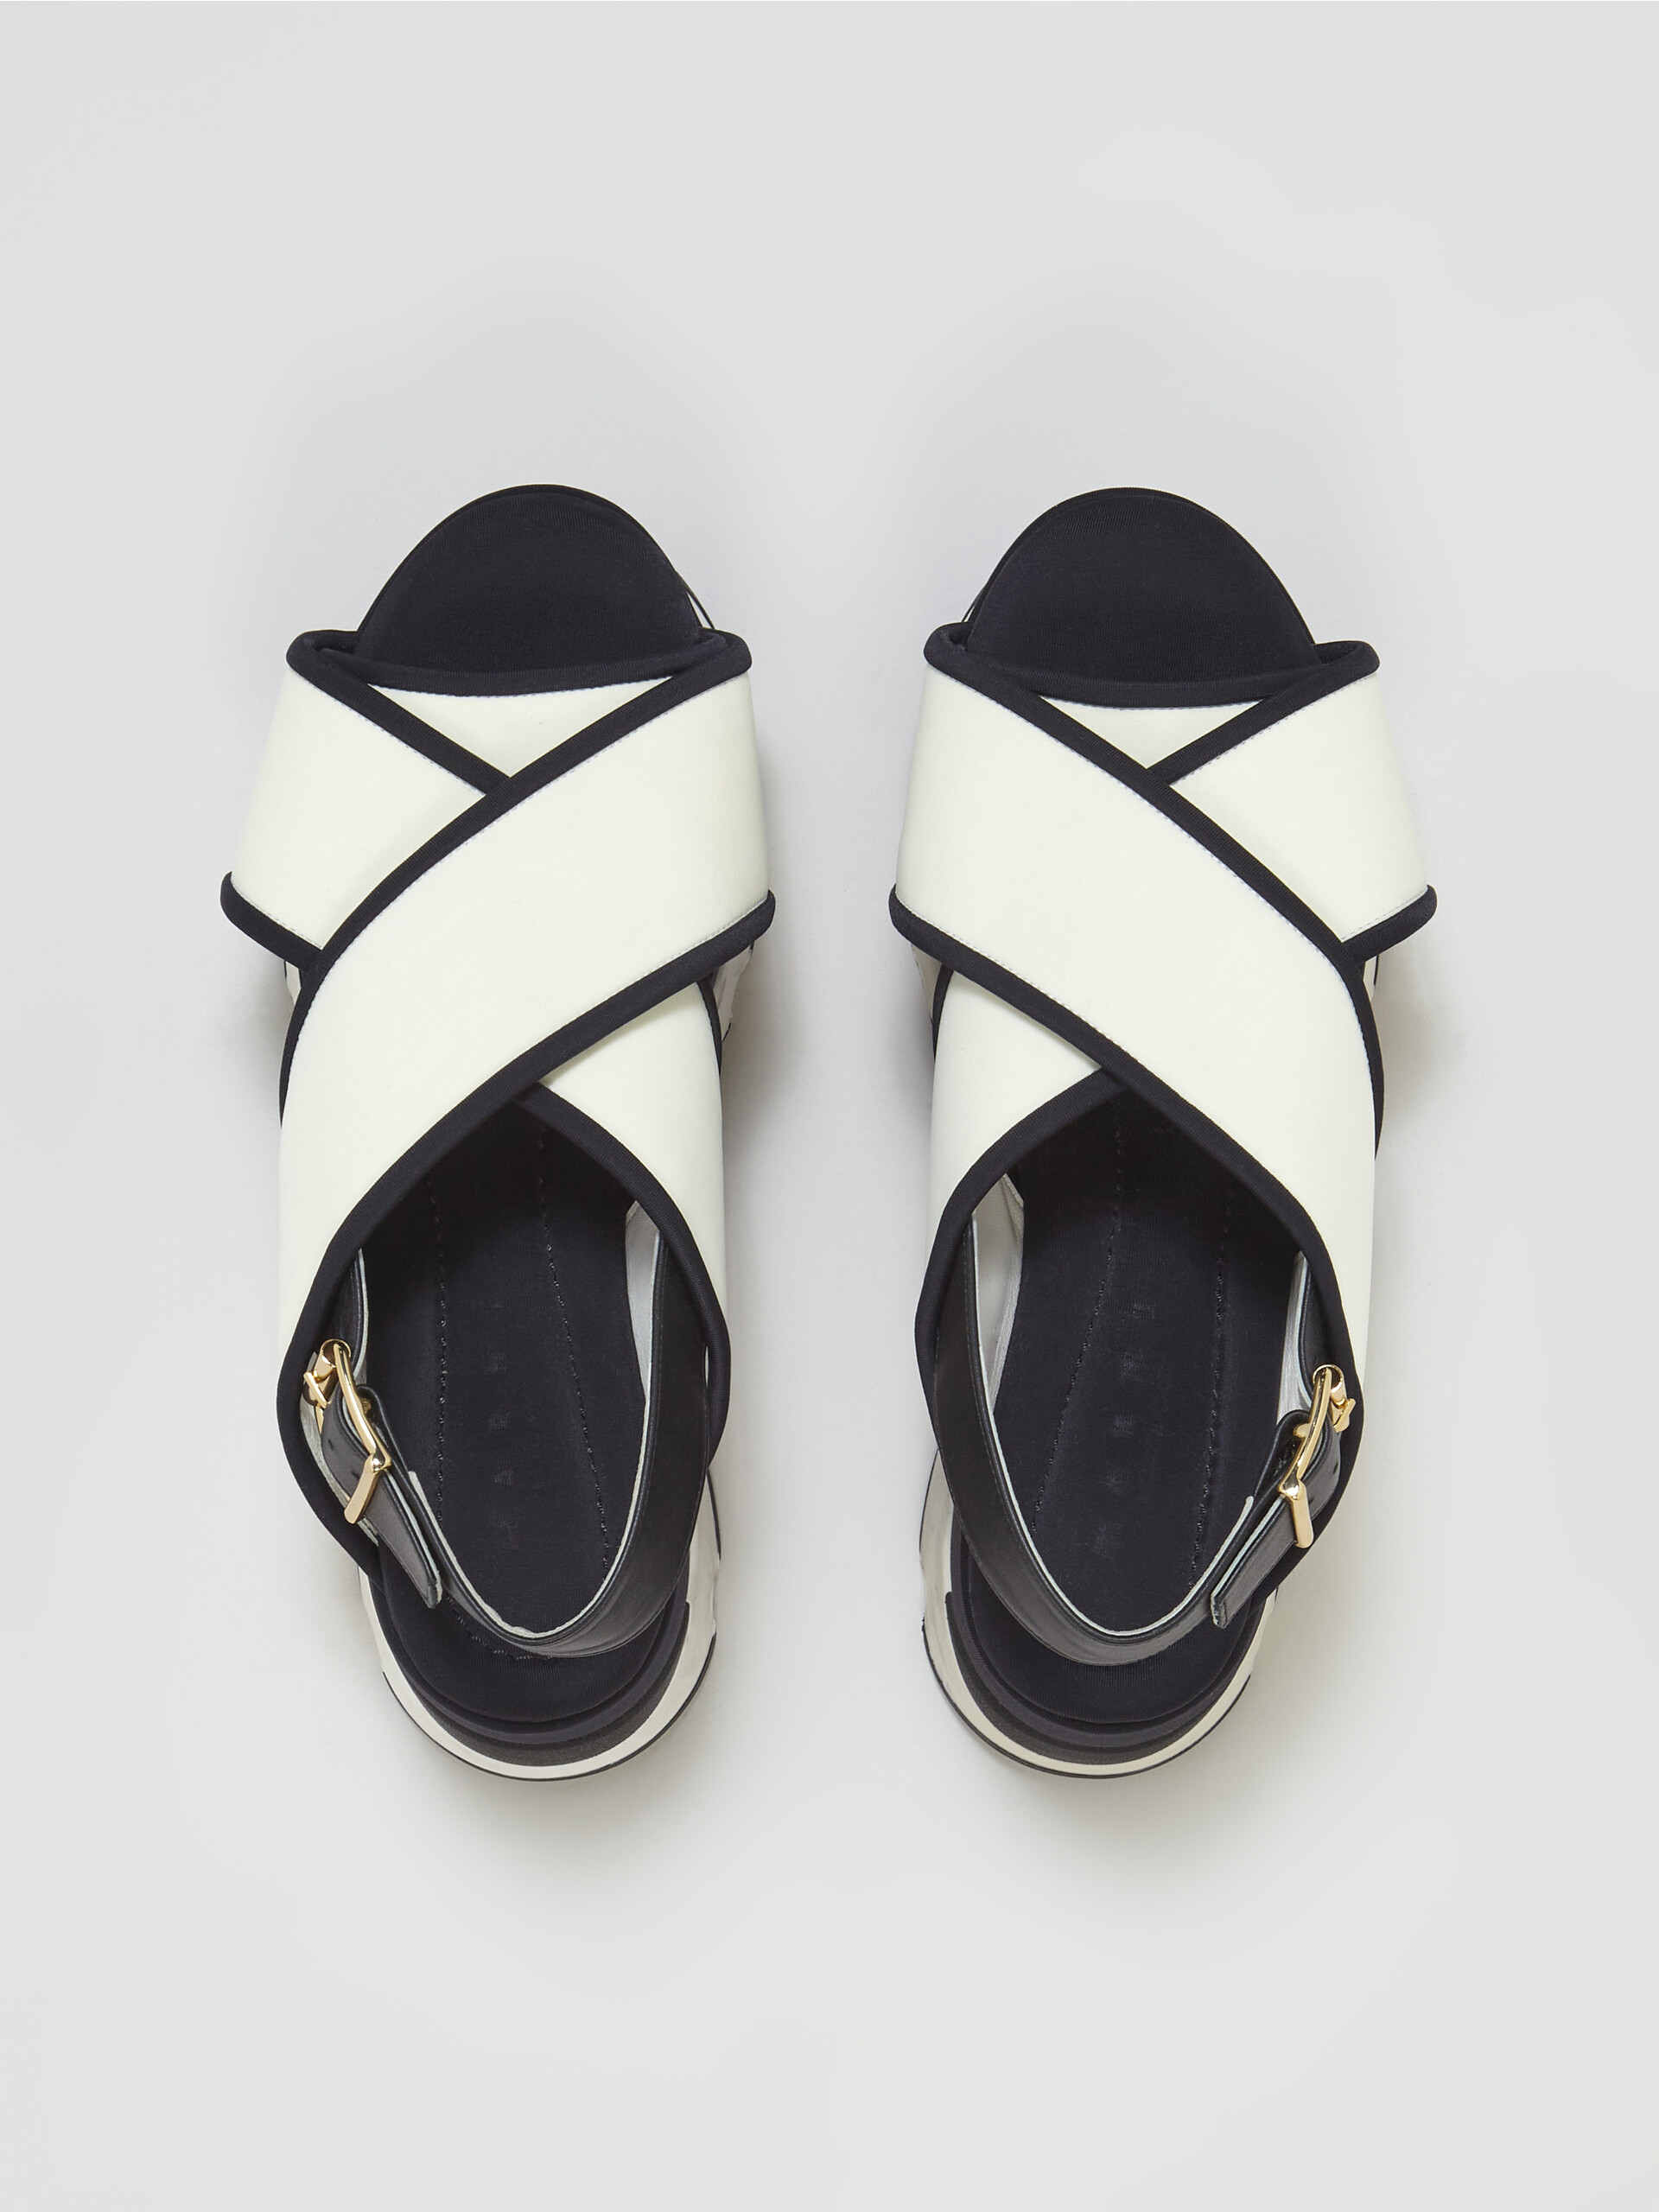 Sandales compensées en tissu technique blanc et noir - Sandales - Image 4